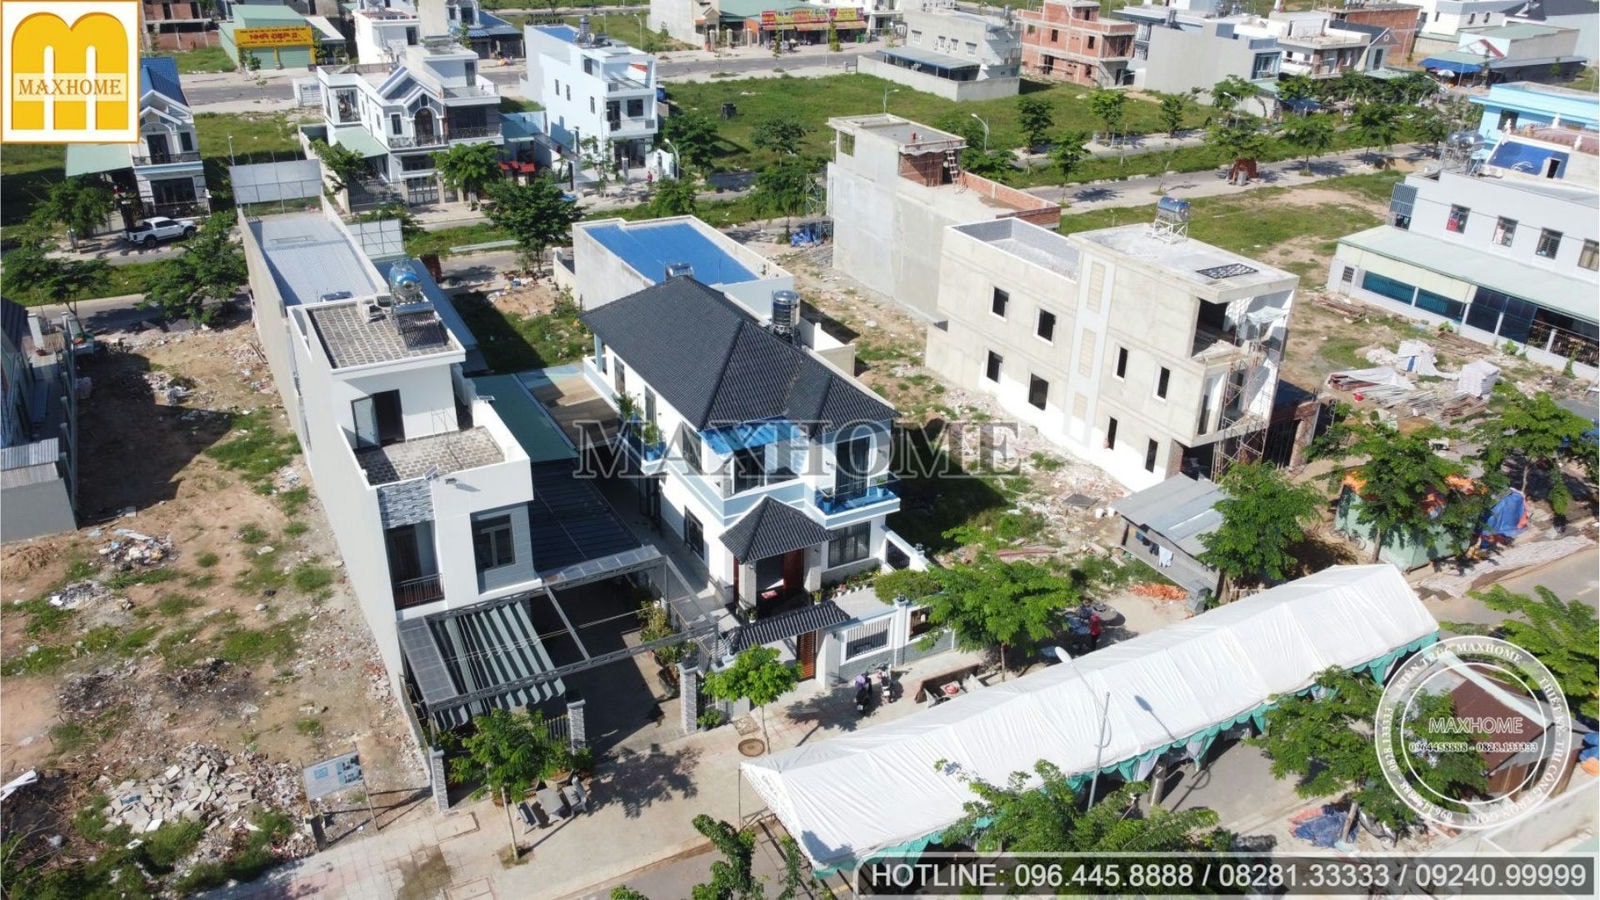 Trọn gói chỉ từ 1,4 tỷ cho mẫu nhà 2 tầng mái Nhật đẹp ở Đồng Nai